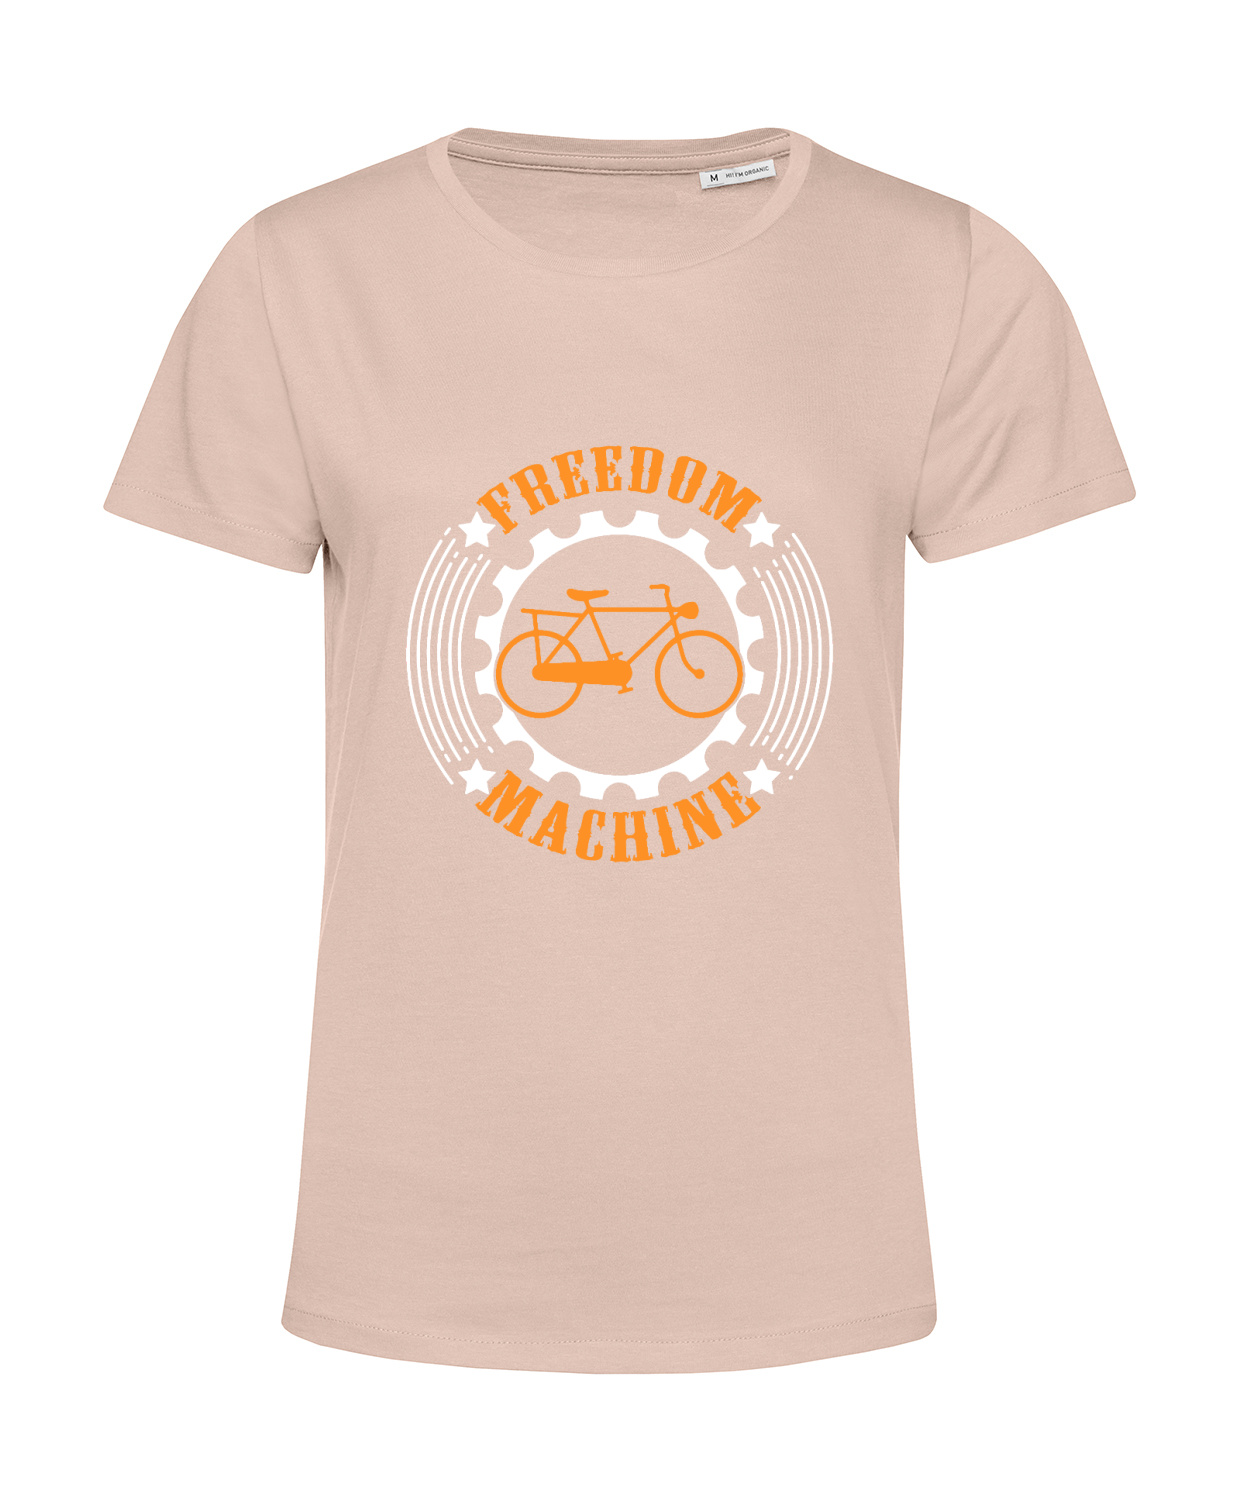 Nachhaltiges T-Shirt Damen Fahrrad Freedom Machine